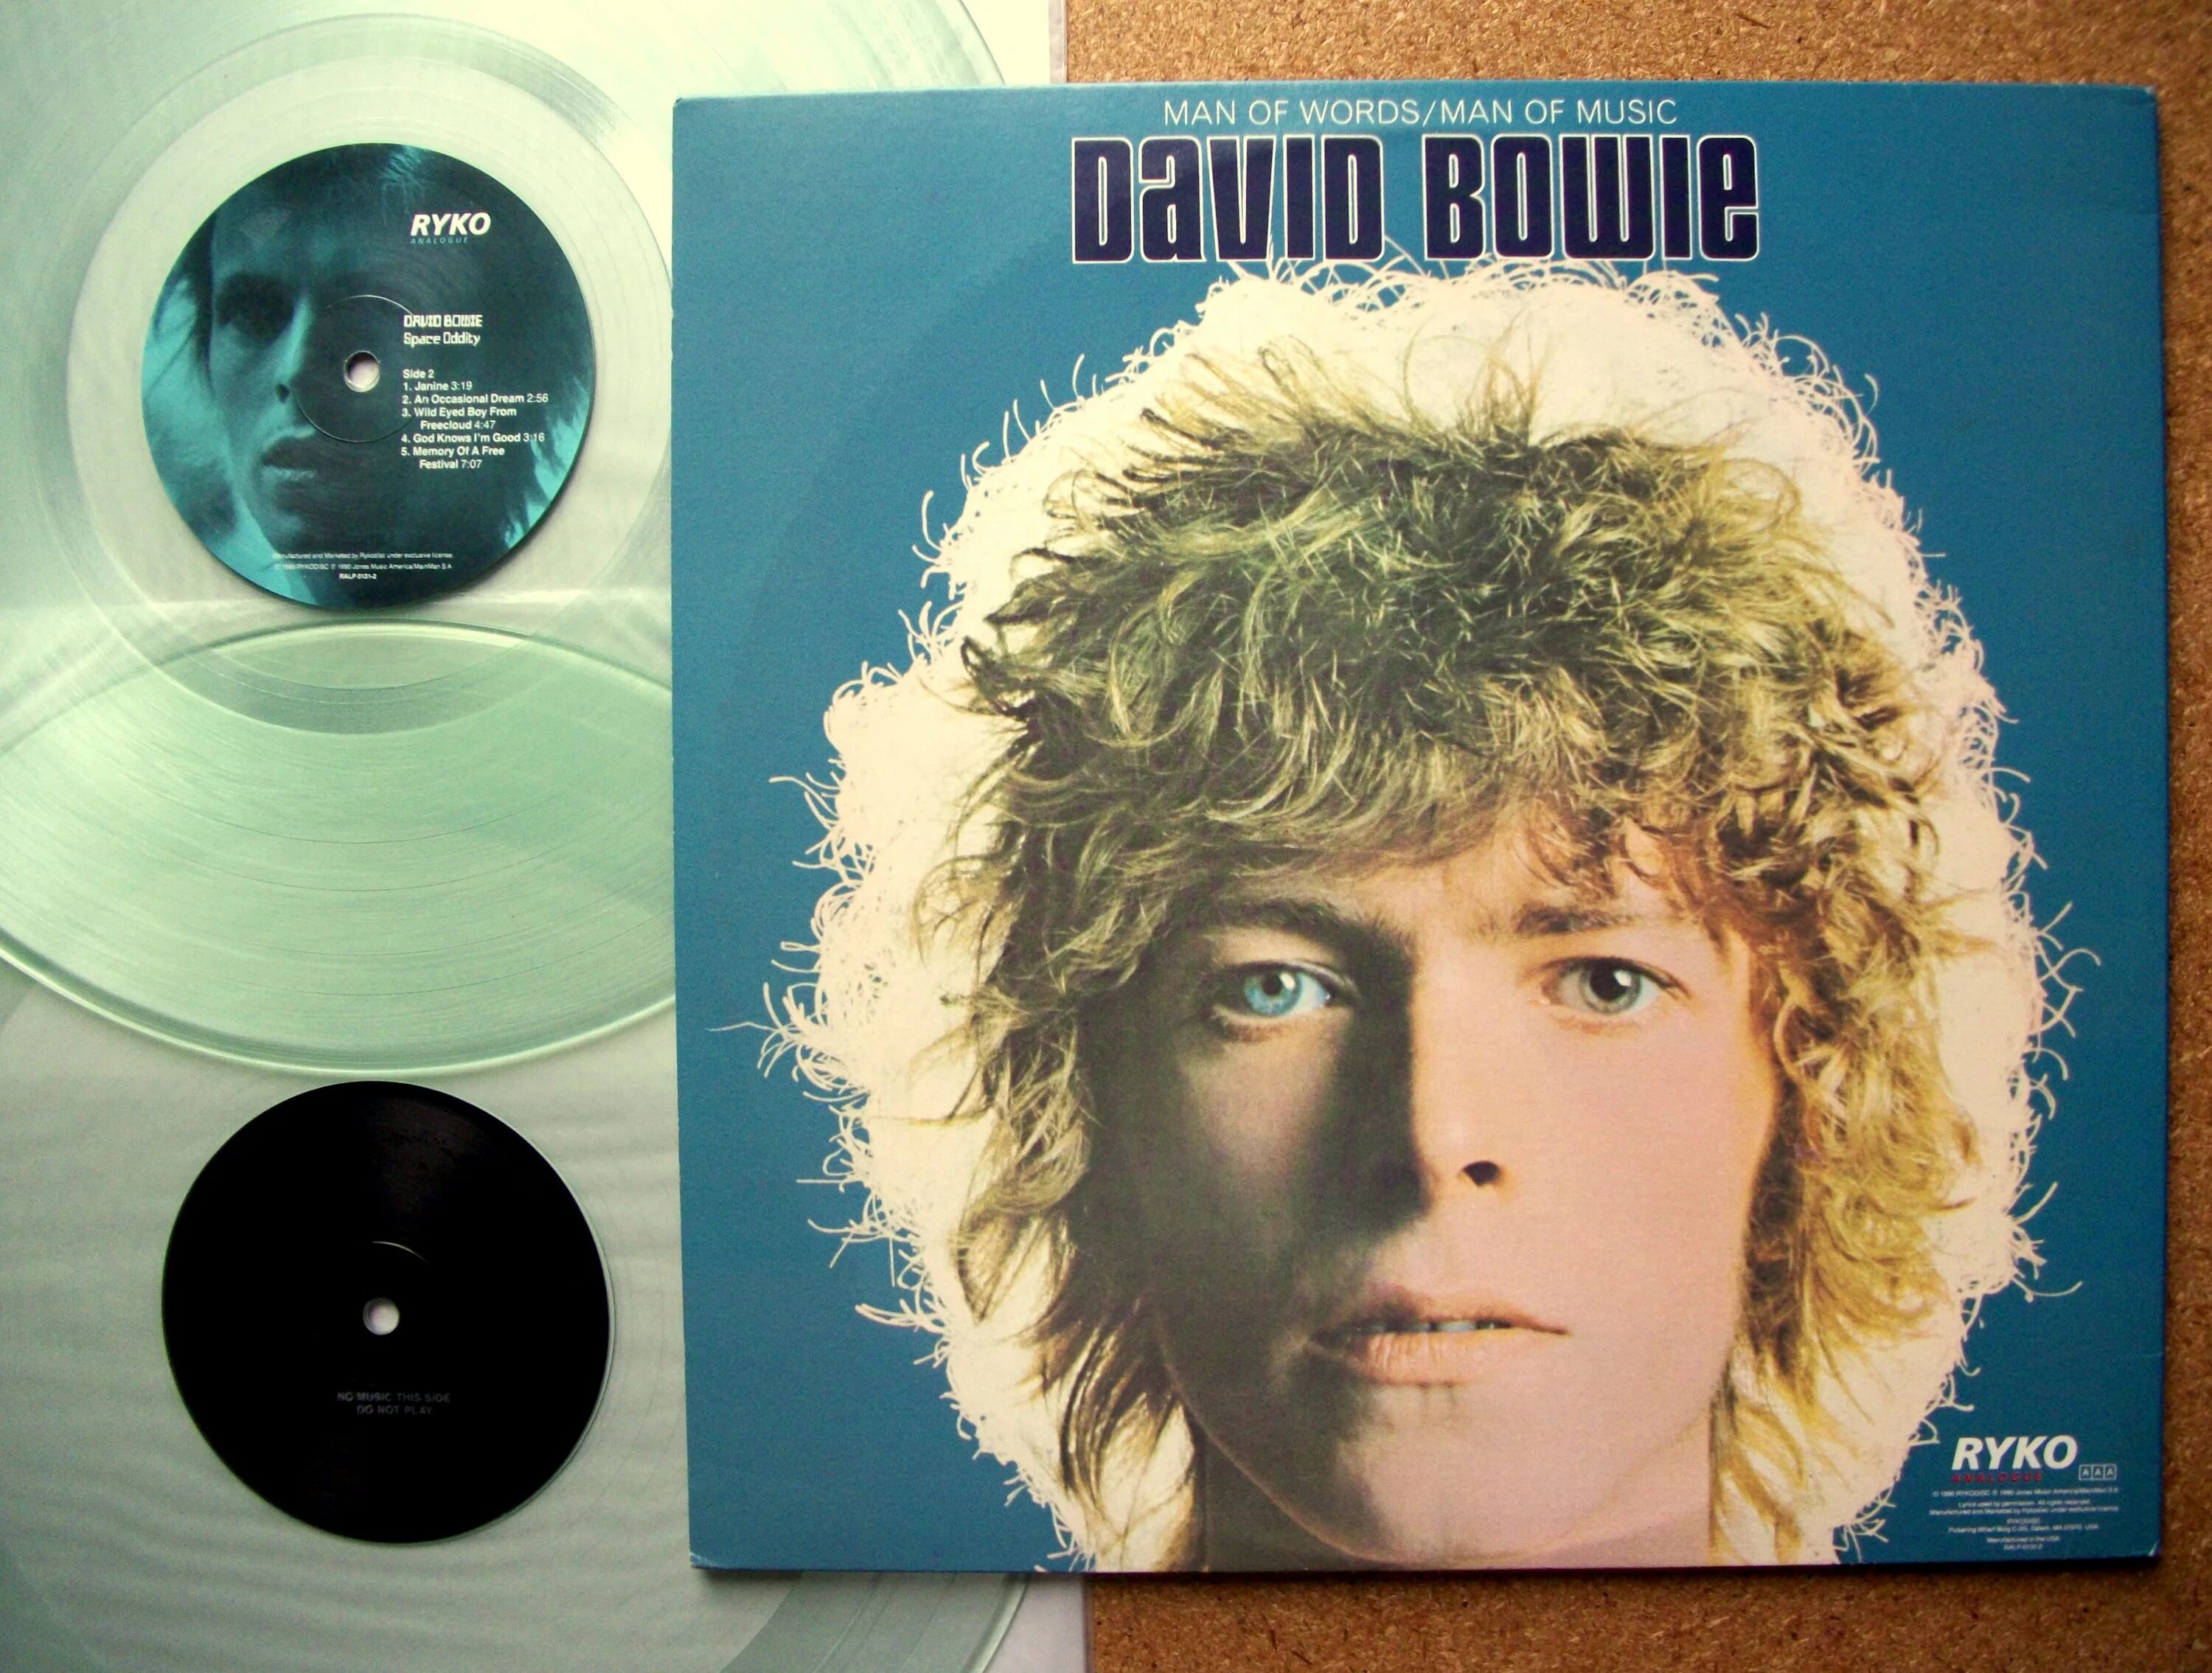 Дэвид Боуи 1969. David Bowie Space Oddity альбом. David Bowie 1969 album. David Bowie Space Oddity 1969. David bowie's space oddity